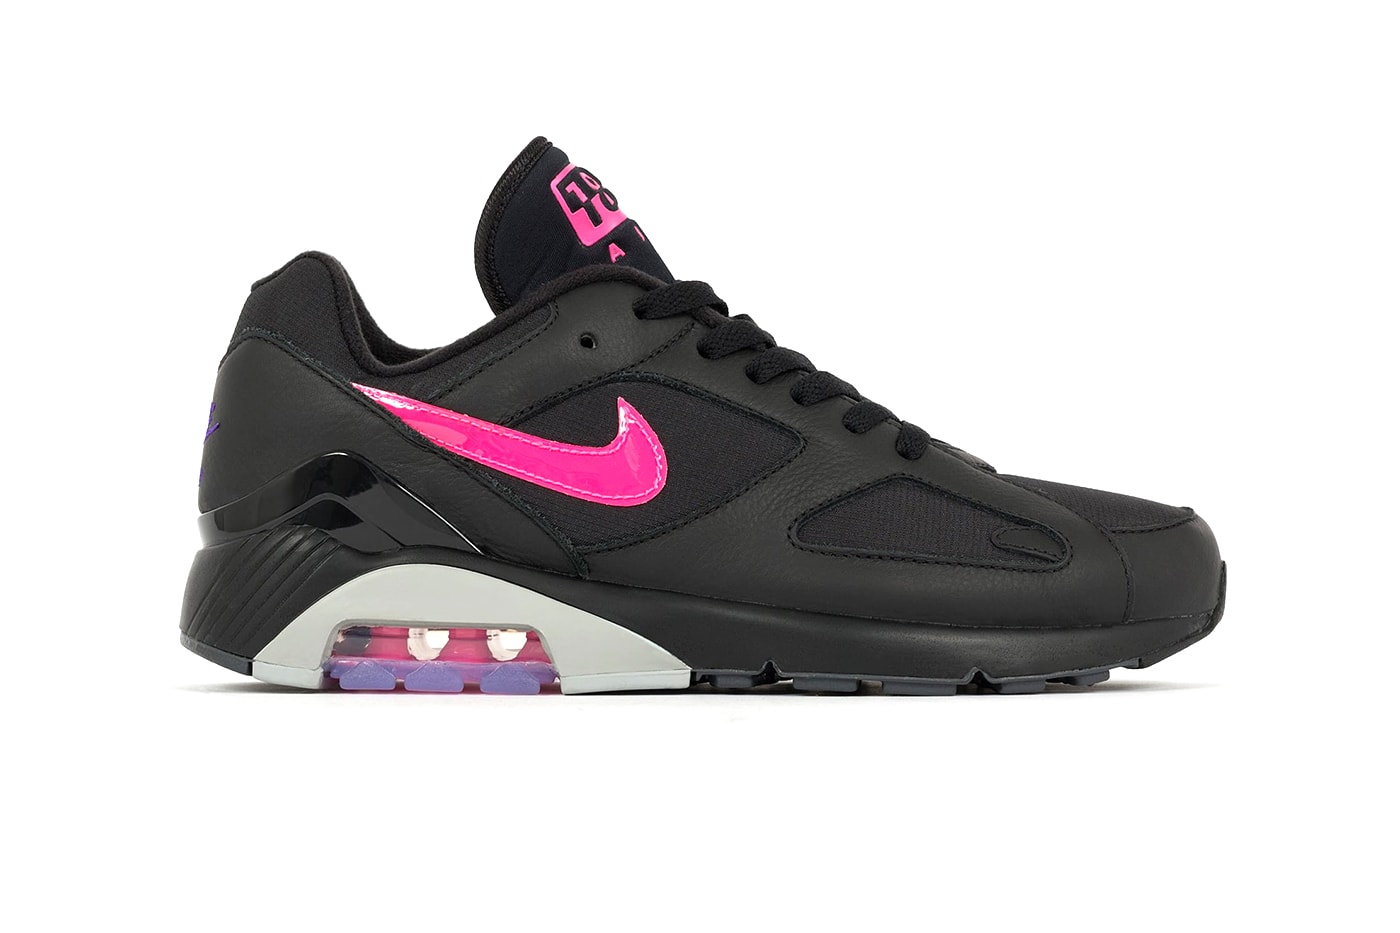 Nike Air Max 180 black wolf grey pink purple release info sneakers footwear